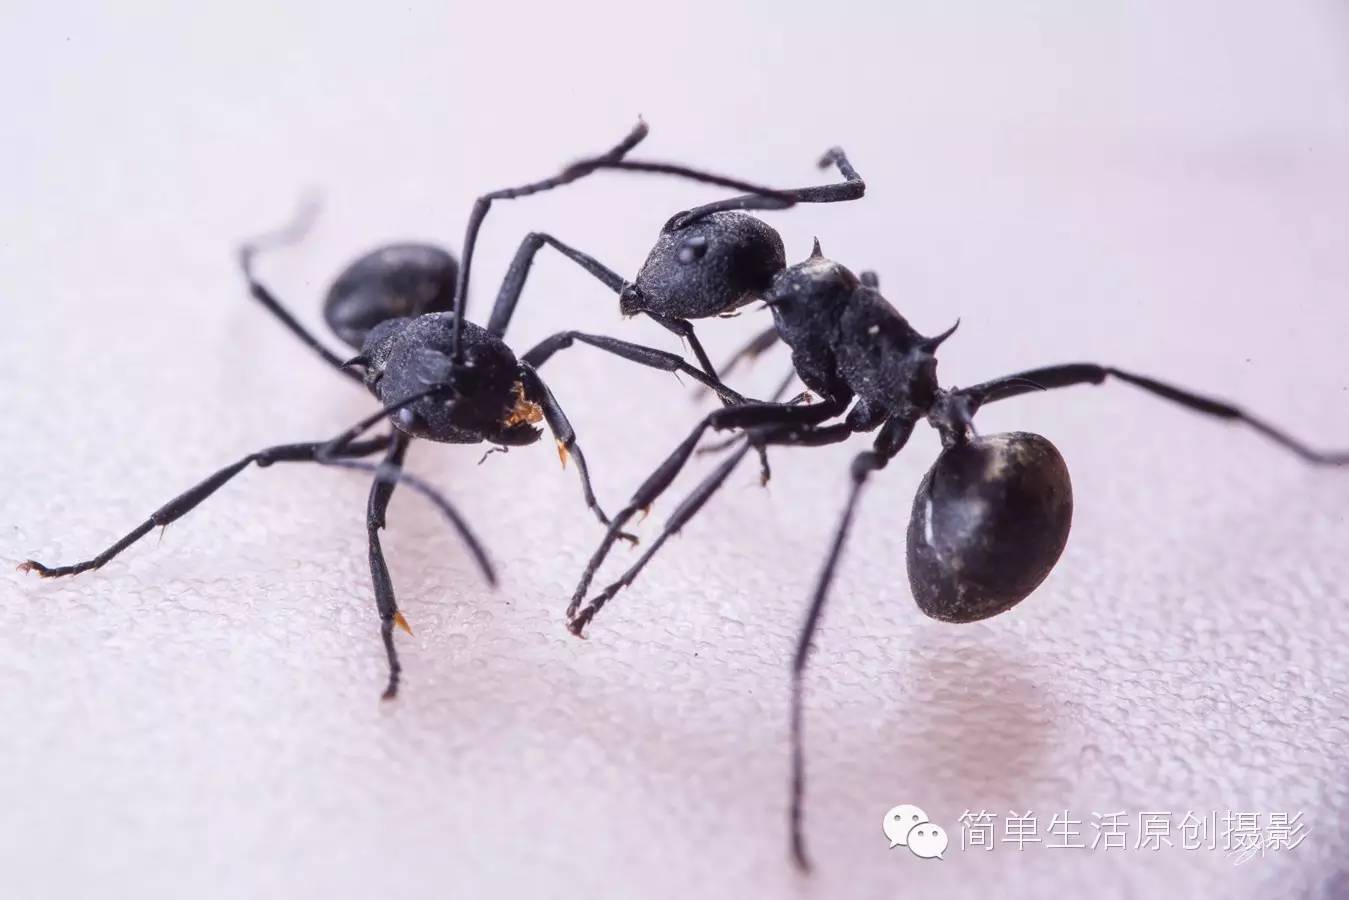 为什么蚂蚁会打架呢